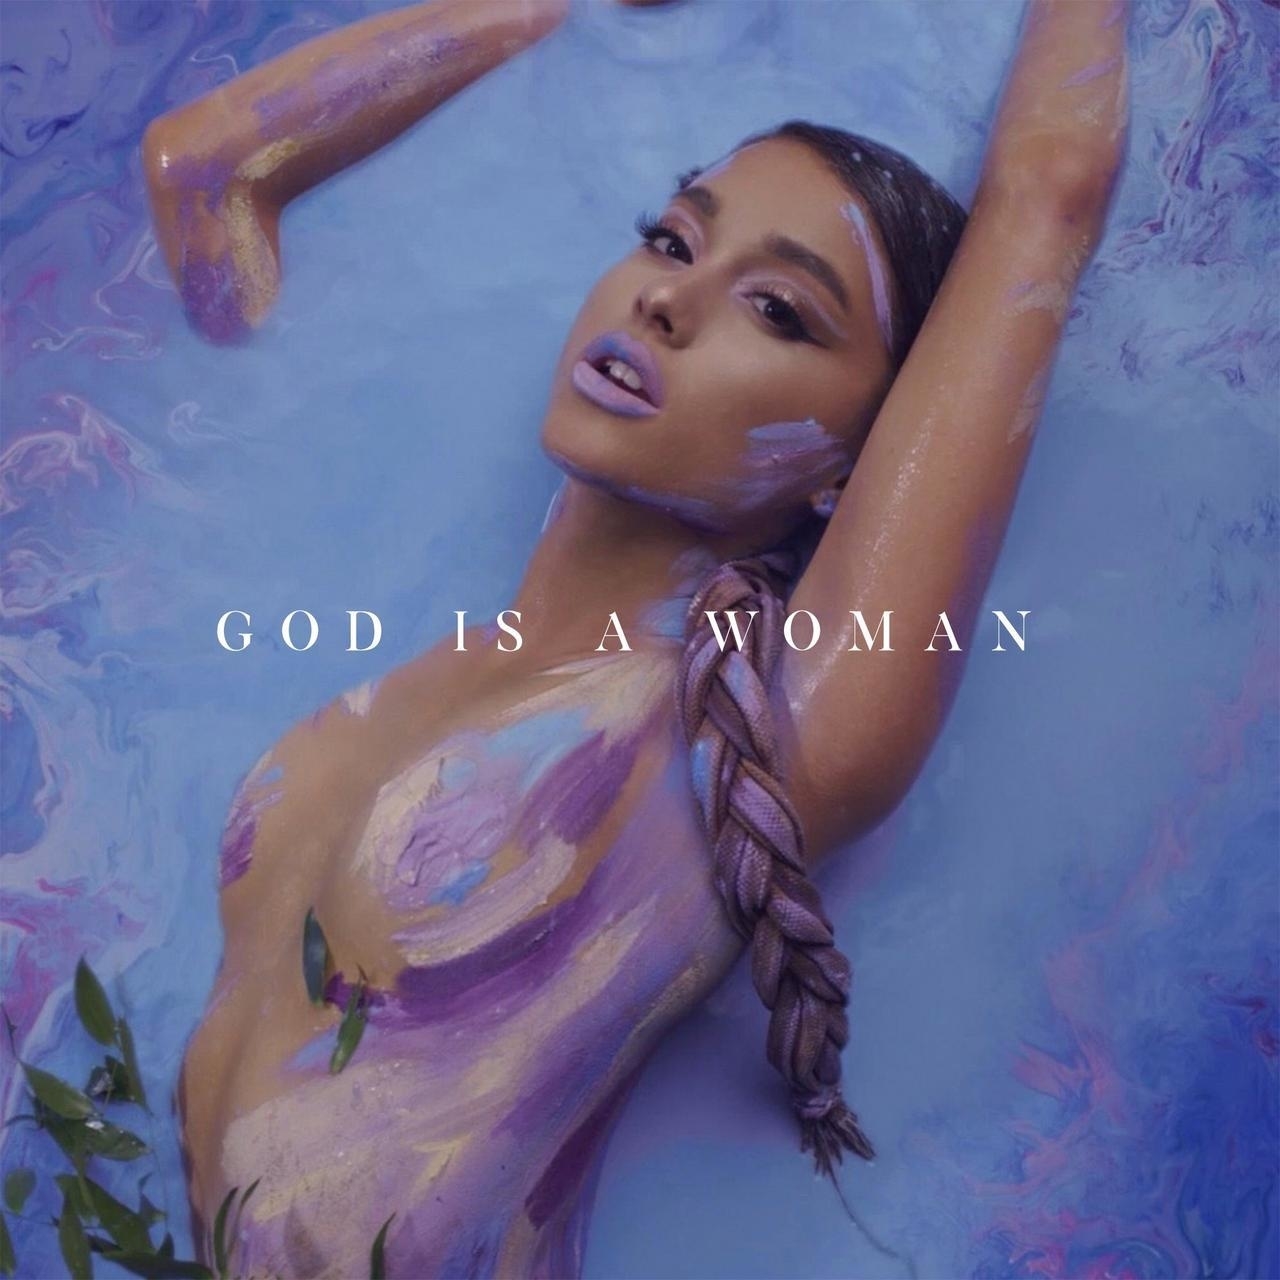 Resultado de imagem para god is a woman art cover